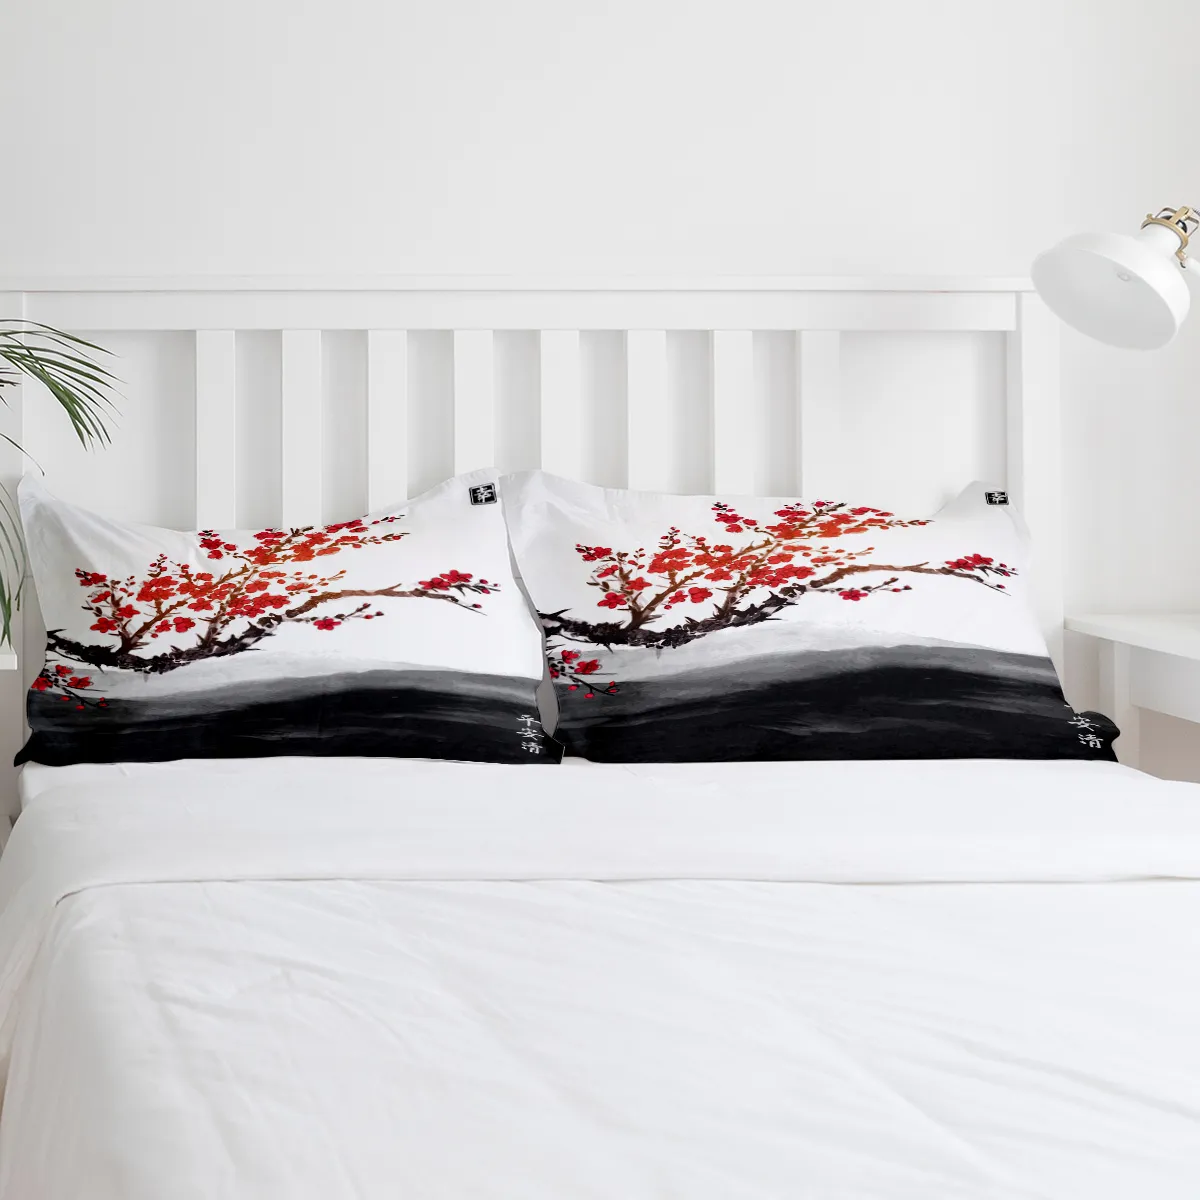 Черри цветущая чернила живопись подвижная крышка набор домашнего текстиля постельных кусочков постельные принадлежности